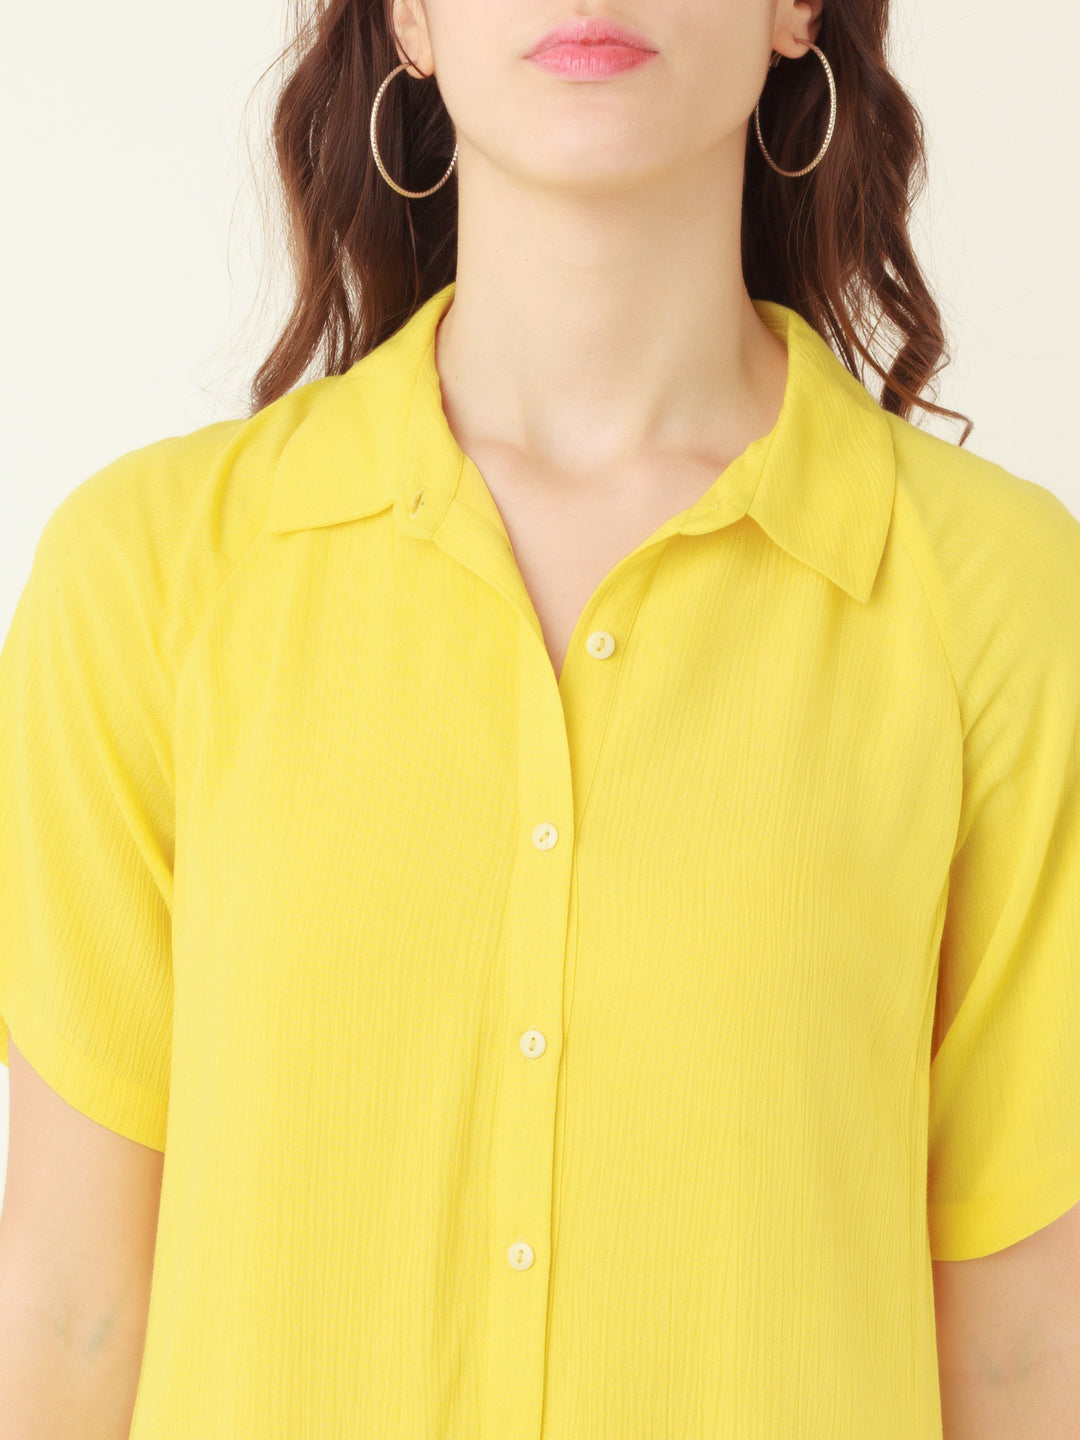 Yellow Solid Shirt Dress Short Dress For Women